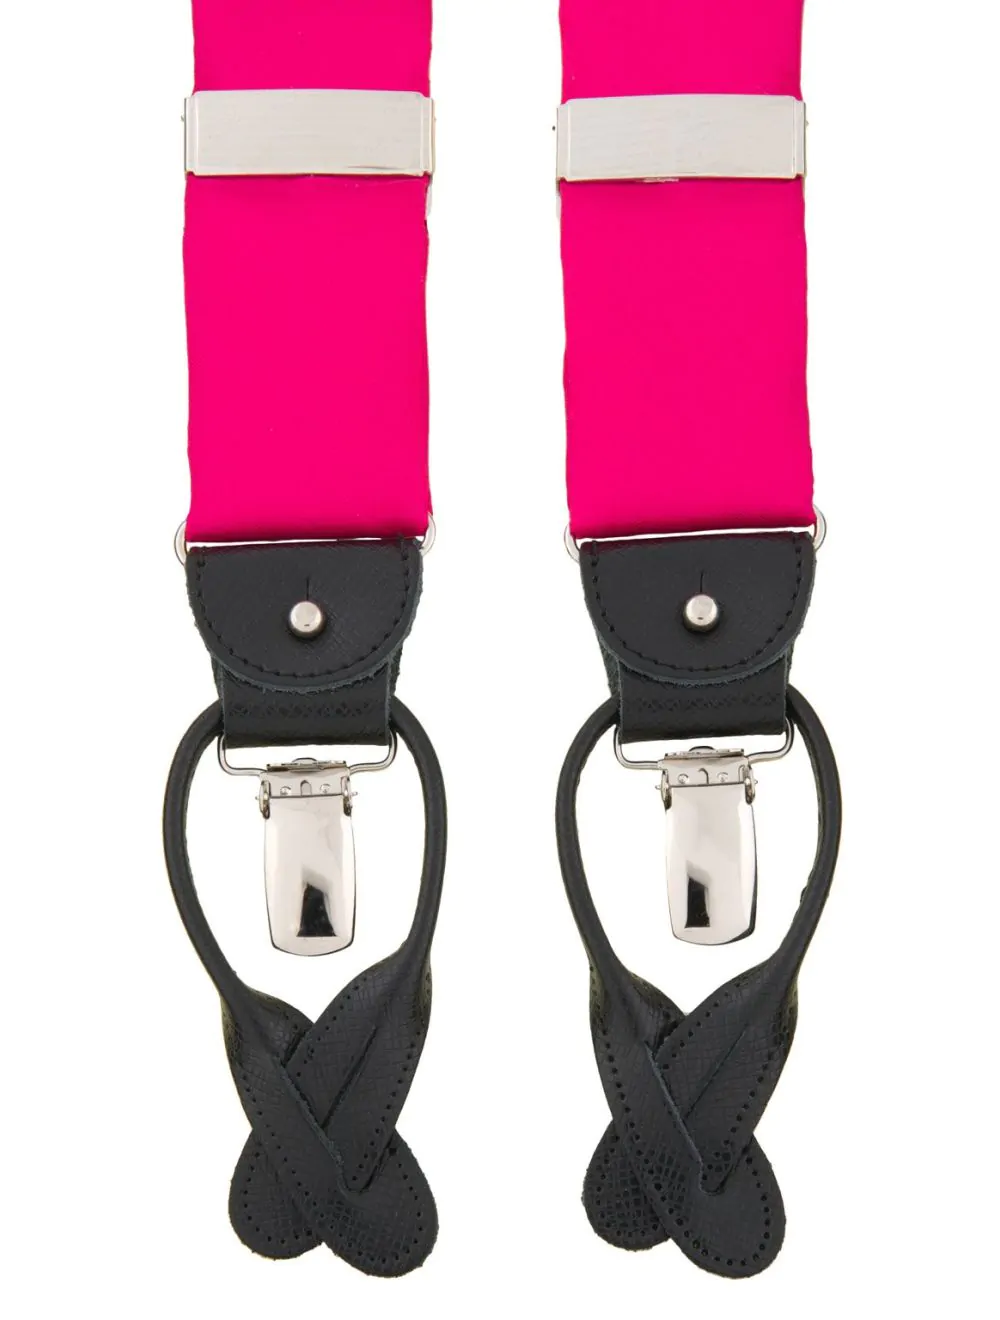 schouder Redelijk gastheer Roze bretels van satijn met zwart leer van het merk Albert Thurston |  Bretels.nl